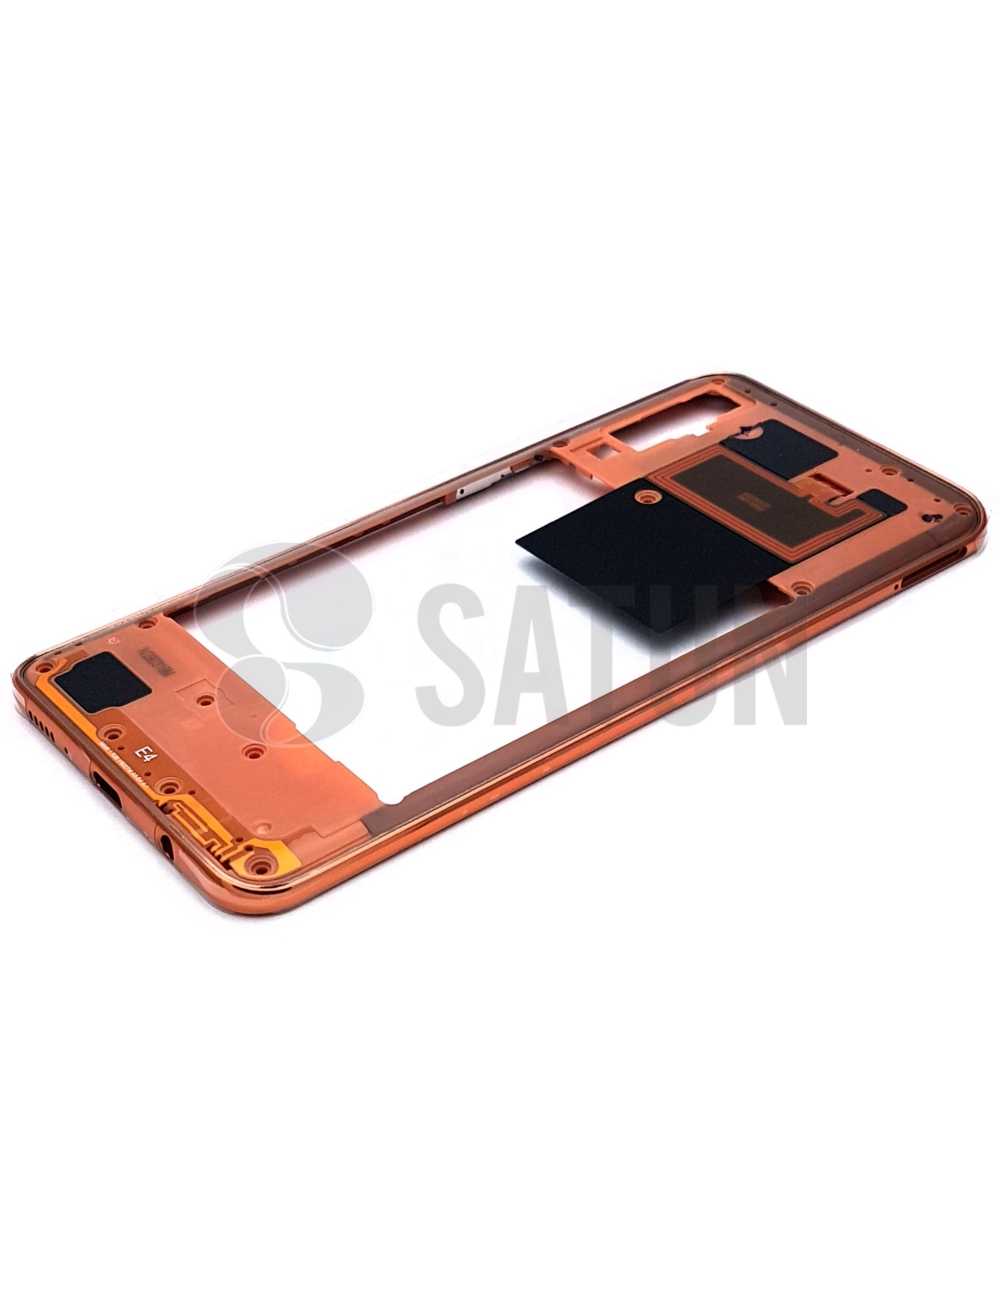 Carcasa intermedia Samsung Galaxy A50 naranja